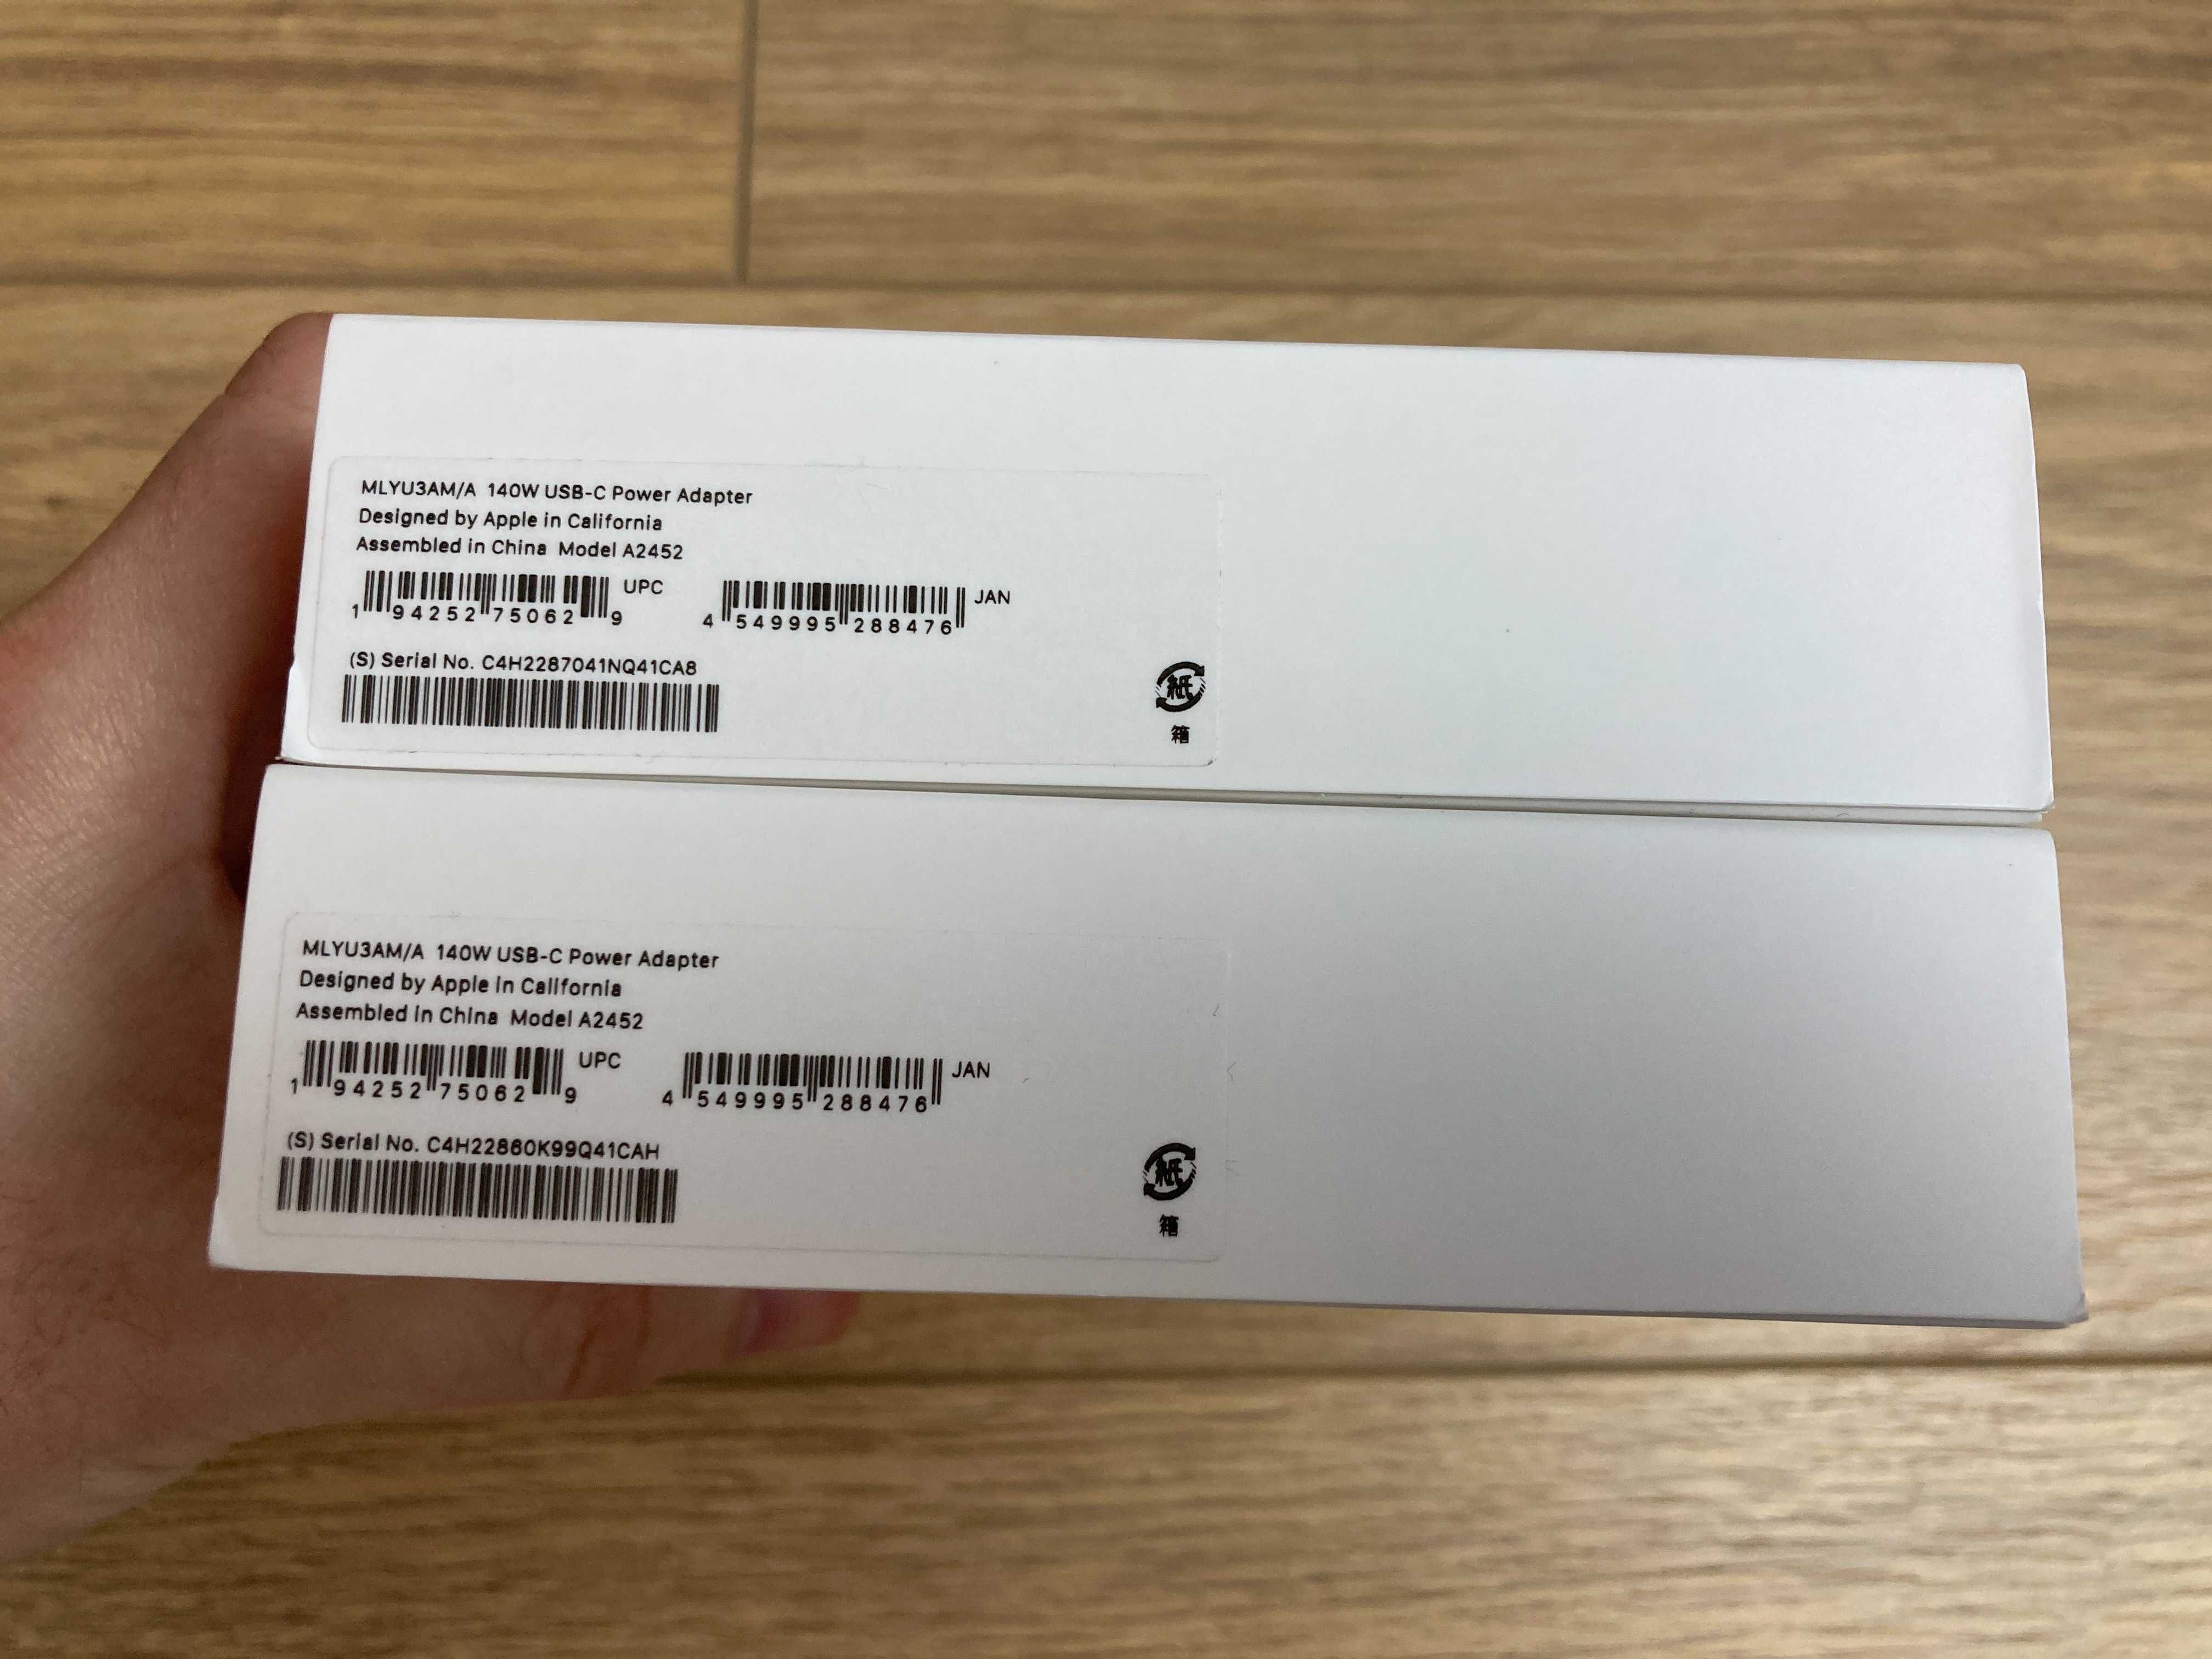 Новий Адаптер USB-C на 140 Вт для 16" MacBook Pro від Apple